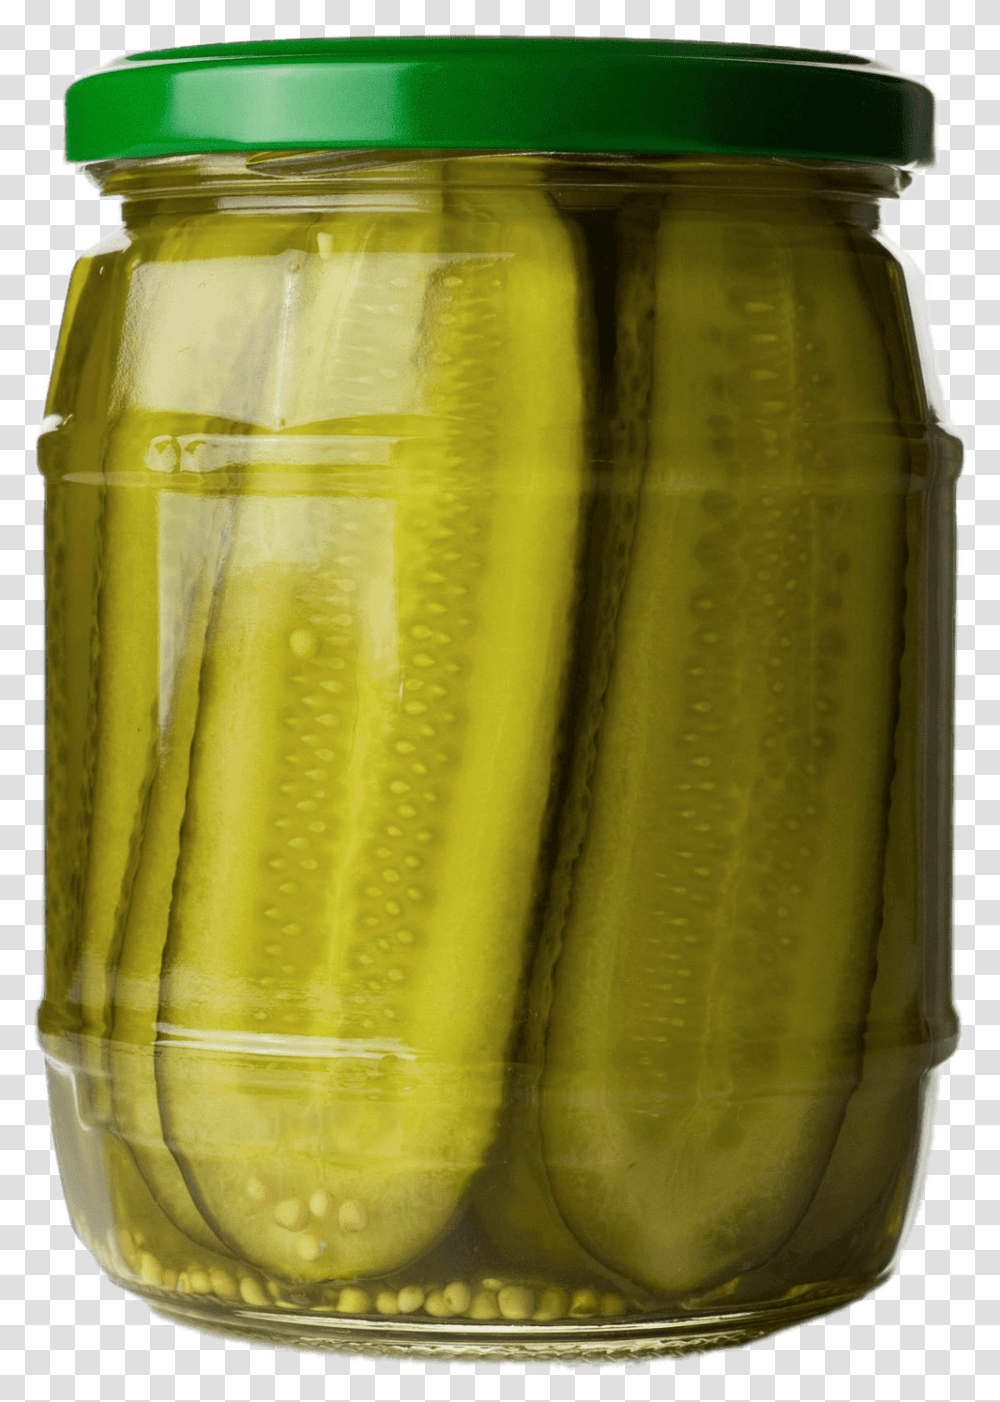 Jar Of Sliced Pickles Jar Of Pickles, Relish, Food, Plant Transparent Png